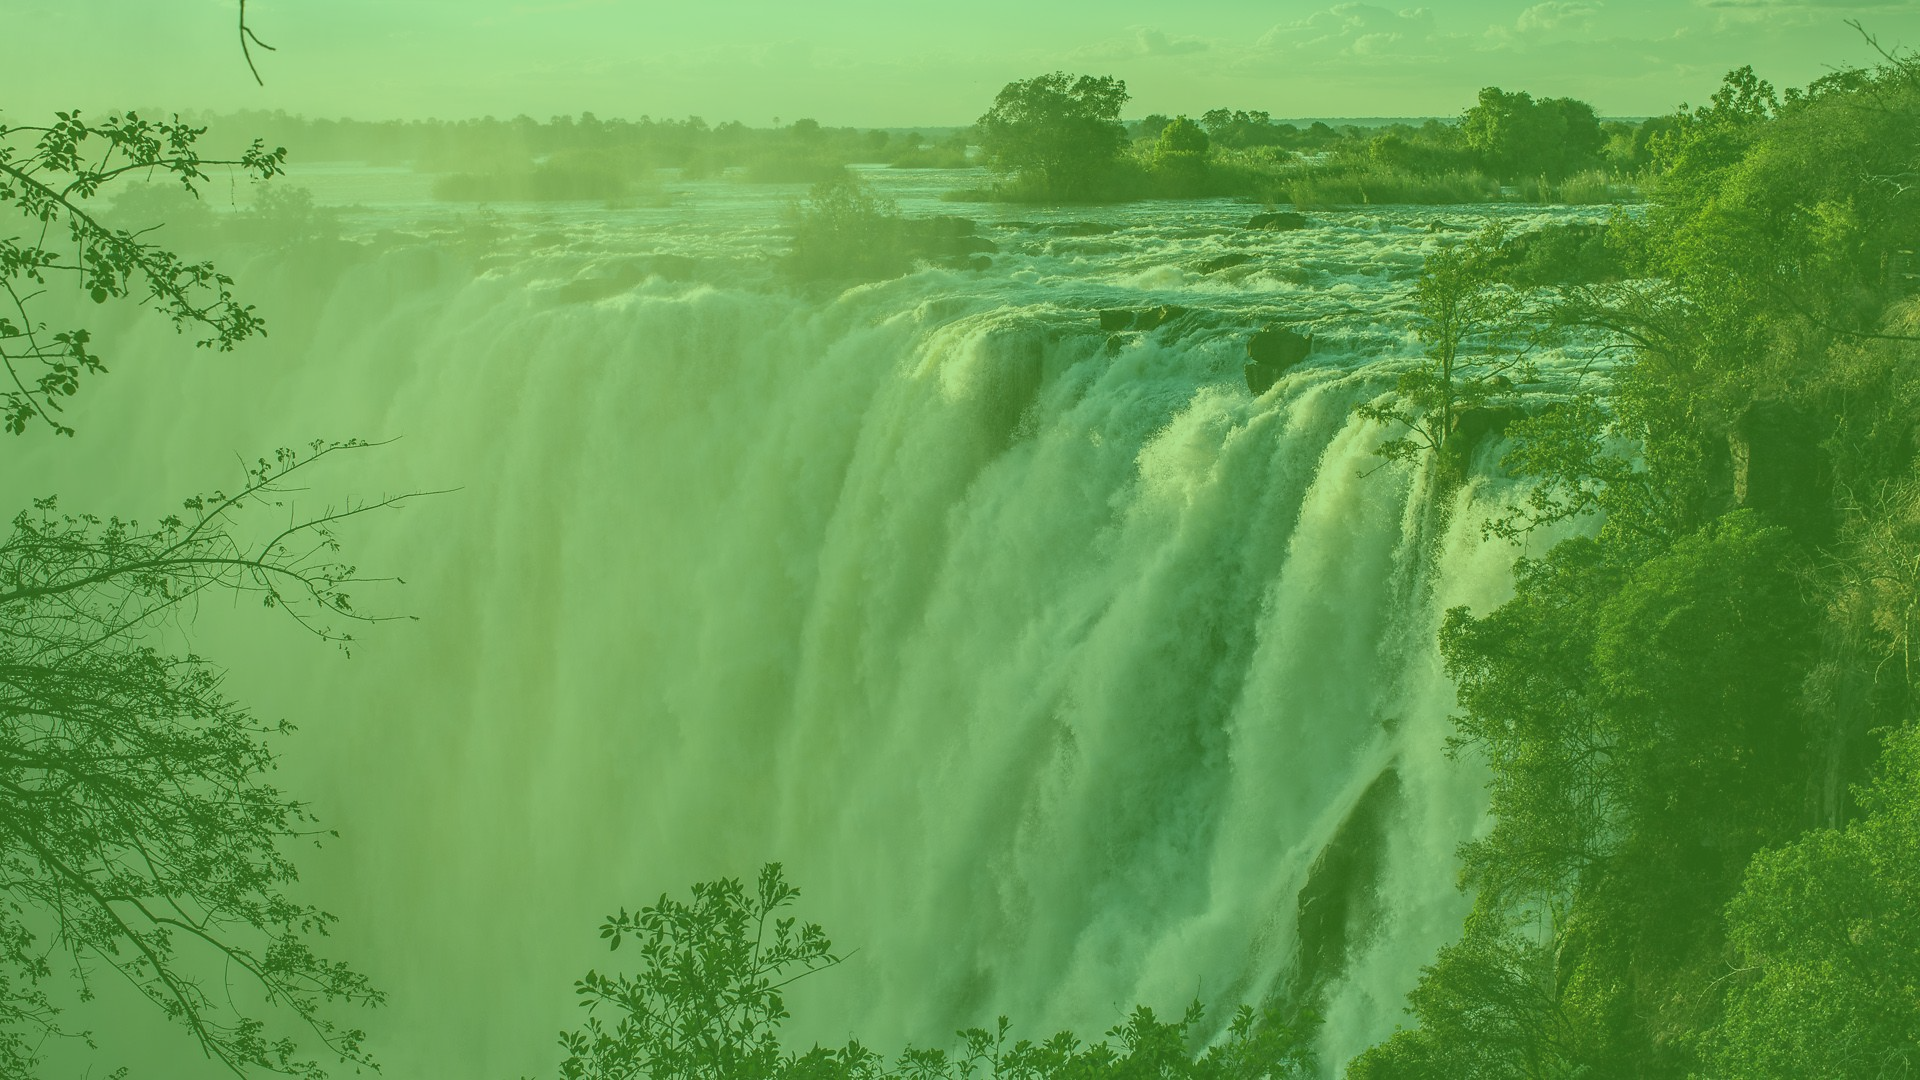 Victoria Falls near Livingstone in Zambia